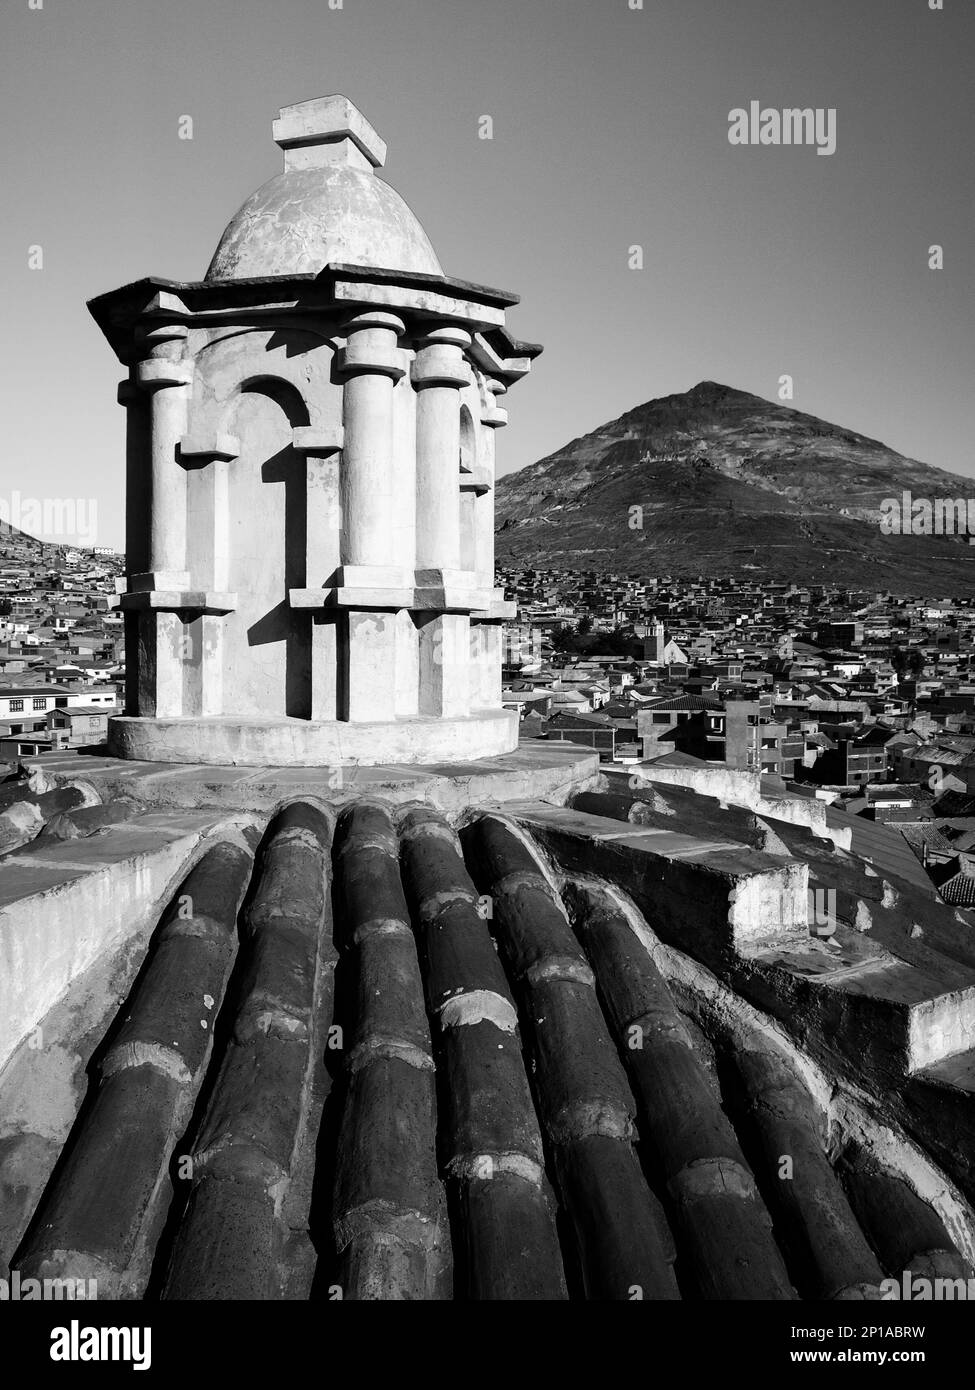 Sul tetto del Convento di San Francisco e Cerro Rico sullo sfondo, Potosi, Bolivia. Immagine in bianco e nero. Foto Stock